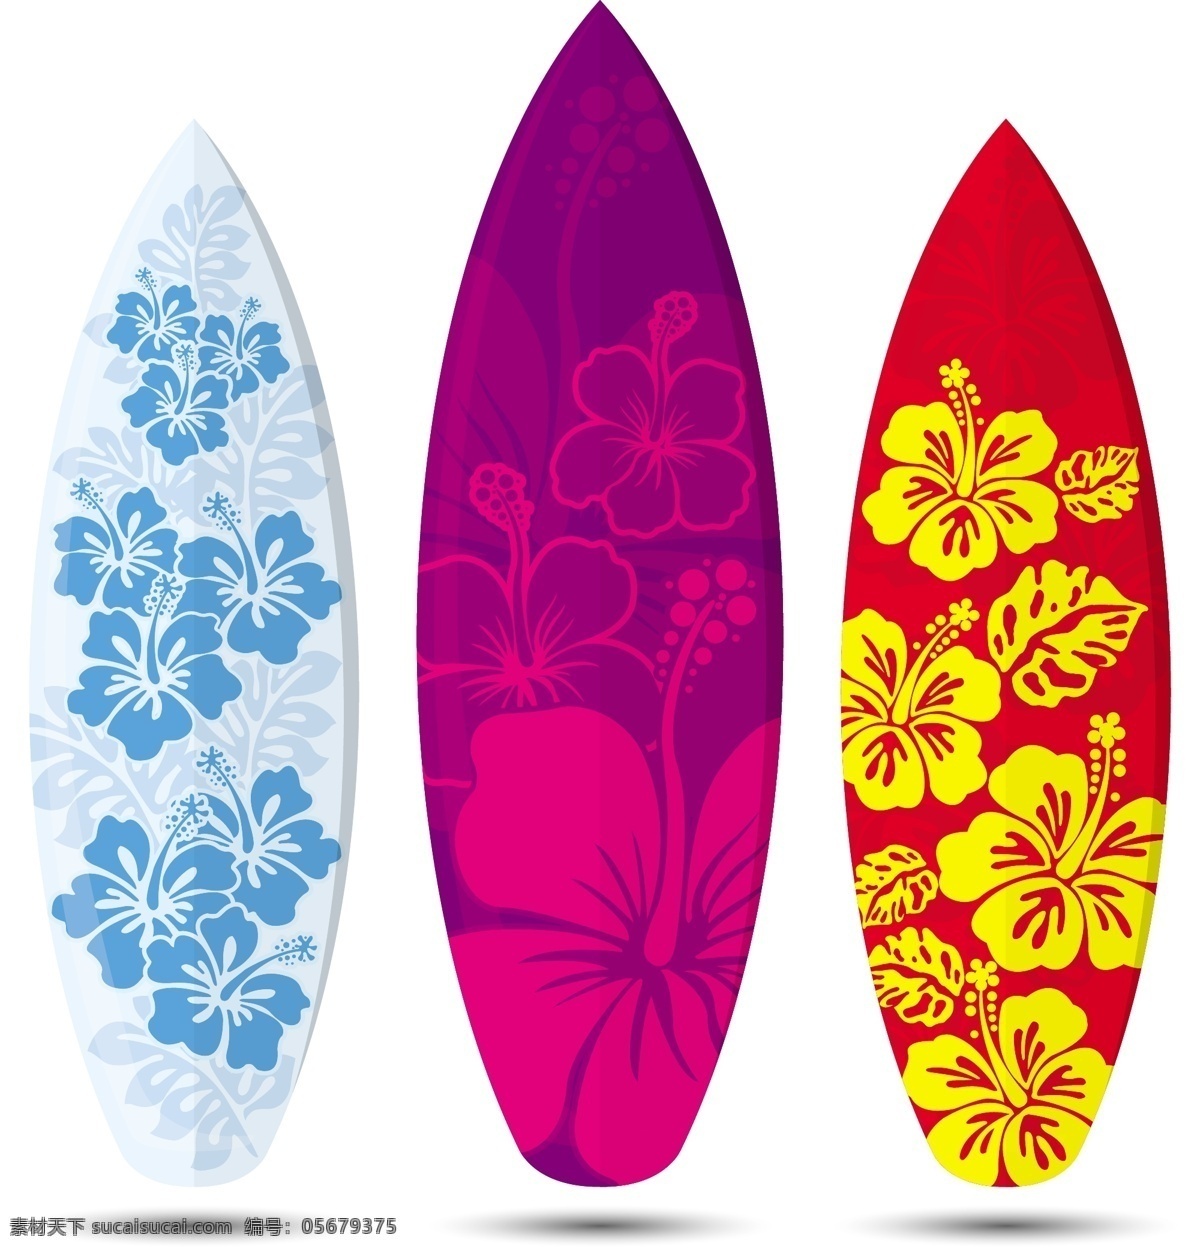 矢量 精美 图腾 印 画 花卉纹样 精美印画 帆板设计 冲浪板 矢量图 花纹花边